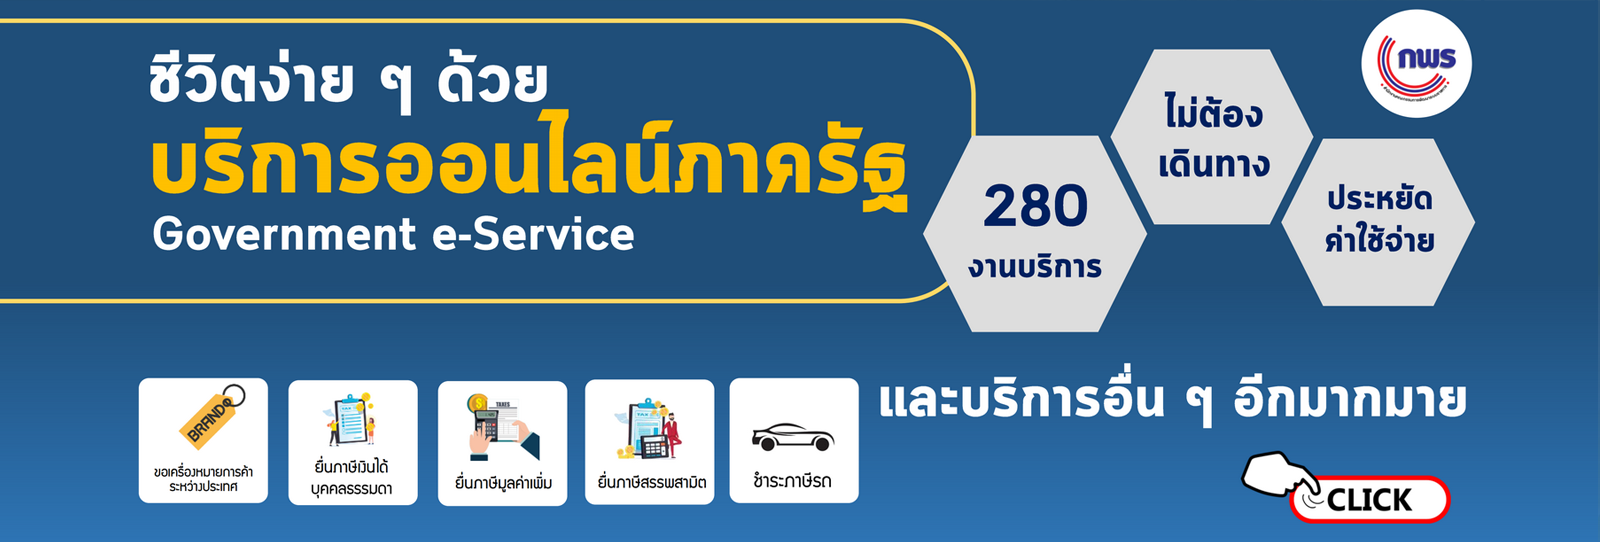 government e-service